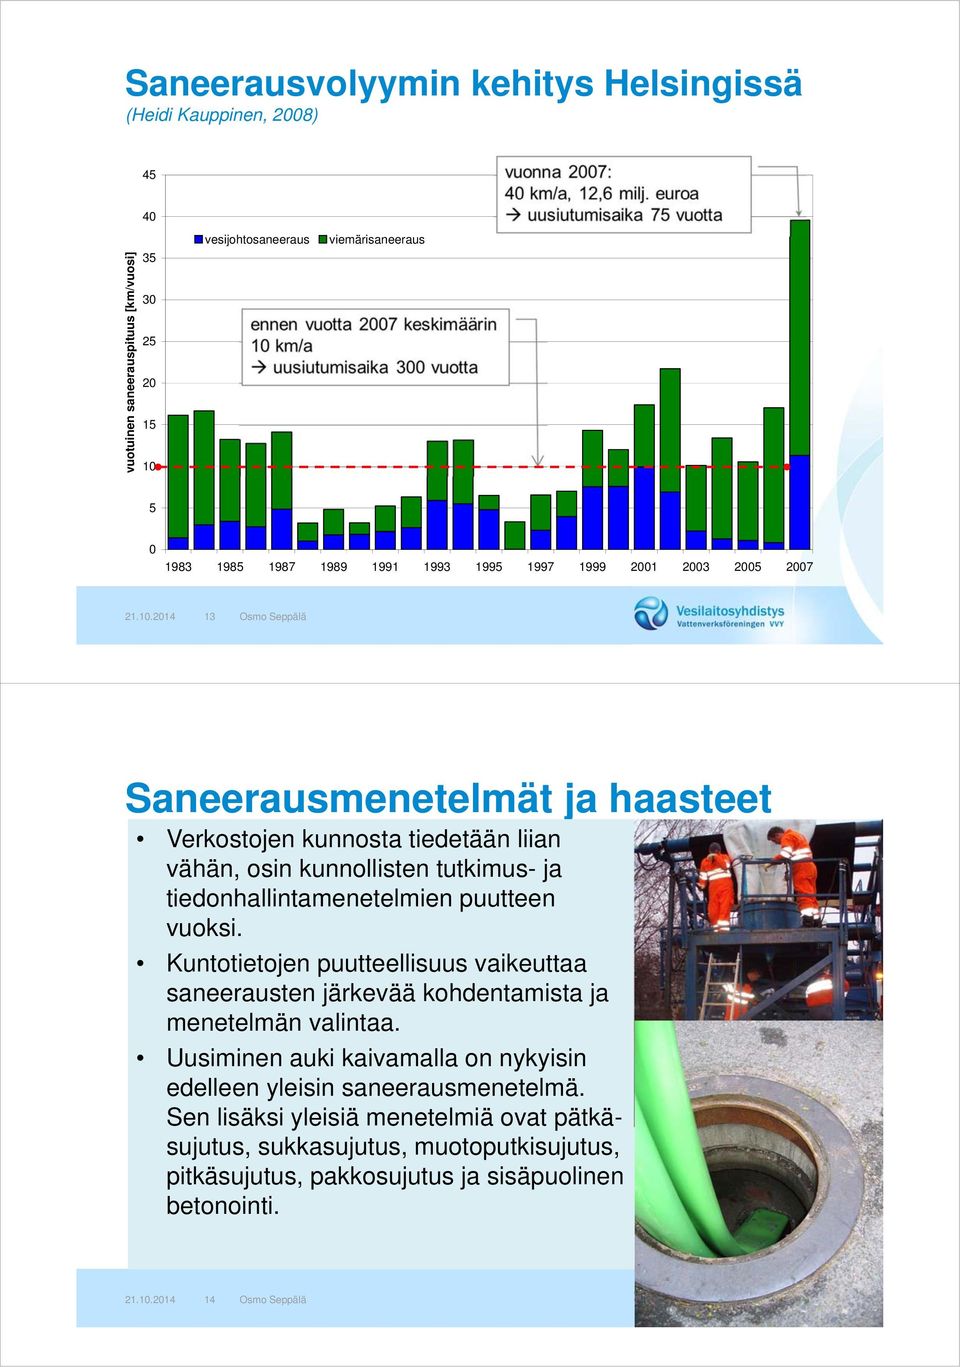 2014 13 Osmo Seppälä Saneerausmenetelmät ja haasteet Verkostojen kunnosta tiedetään liian vähän, osin kunnollisten tutkimus- ja tiedonhallintamenetelmien puutteen vuoksi.